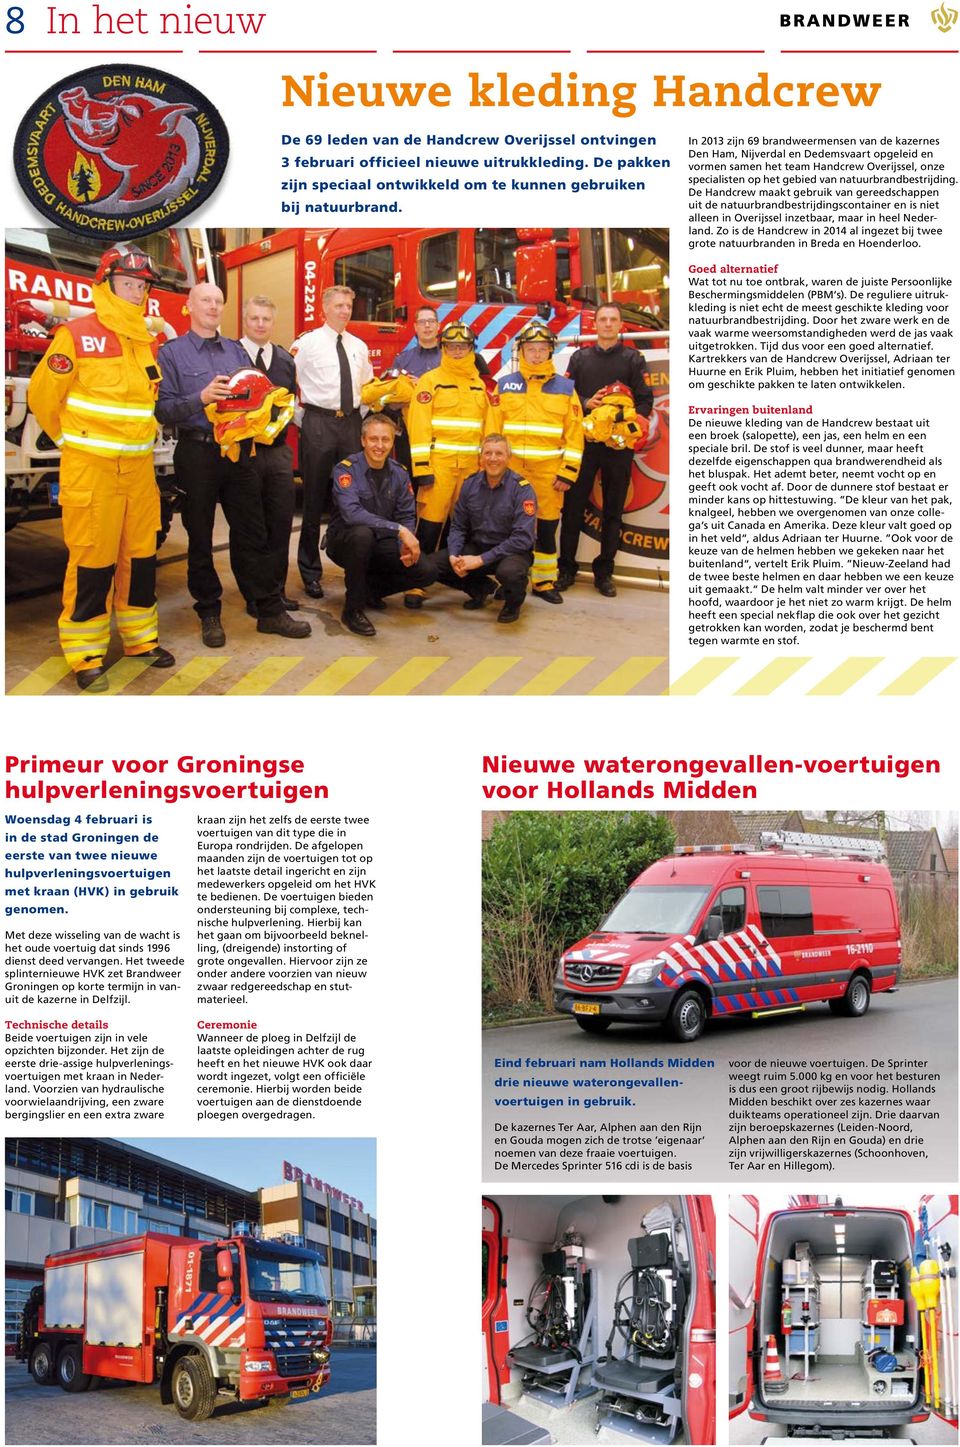 In 2013 zijn 69 brandweermensen van de kazernes Den Ham, Nijverdal en Dedemsvaart opgeleid en vormen samen het team Handcrew Overijssel, onze specialisten op het gebied van natuurbrandbestrijding.